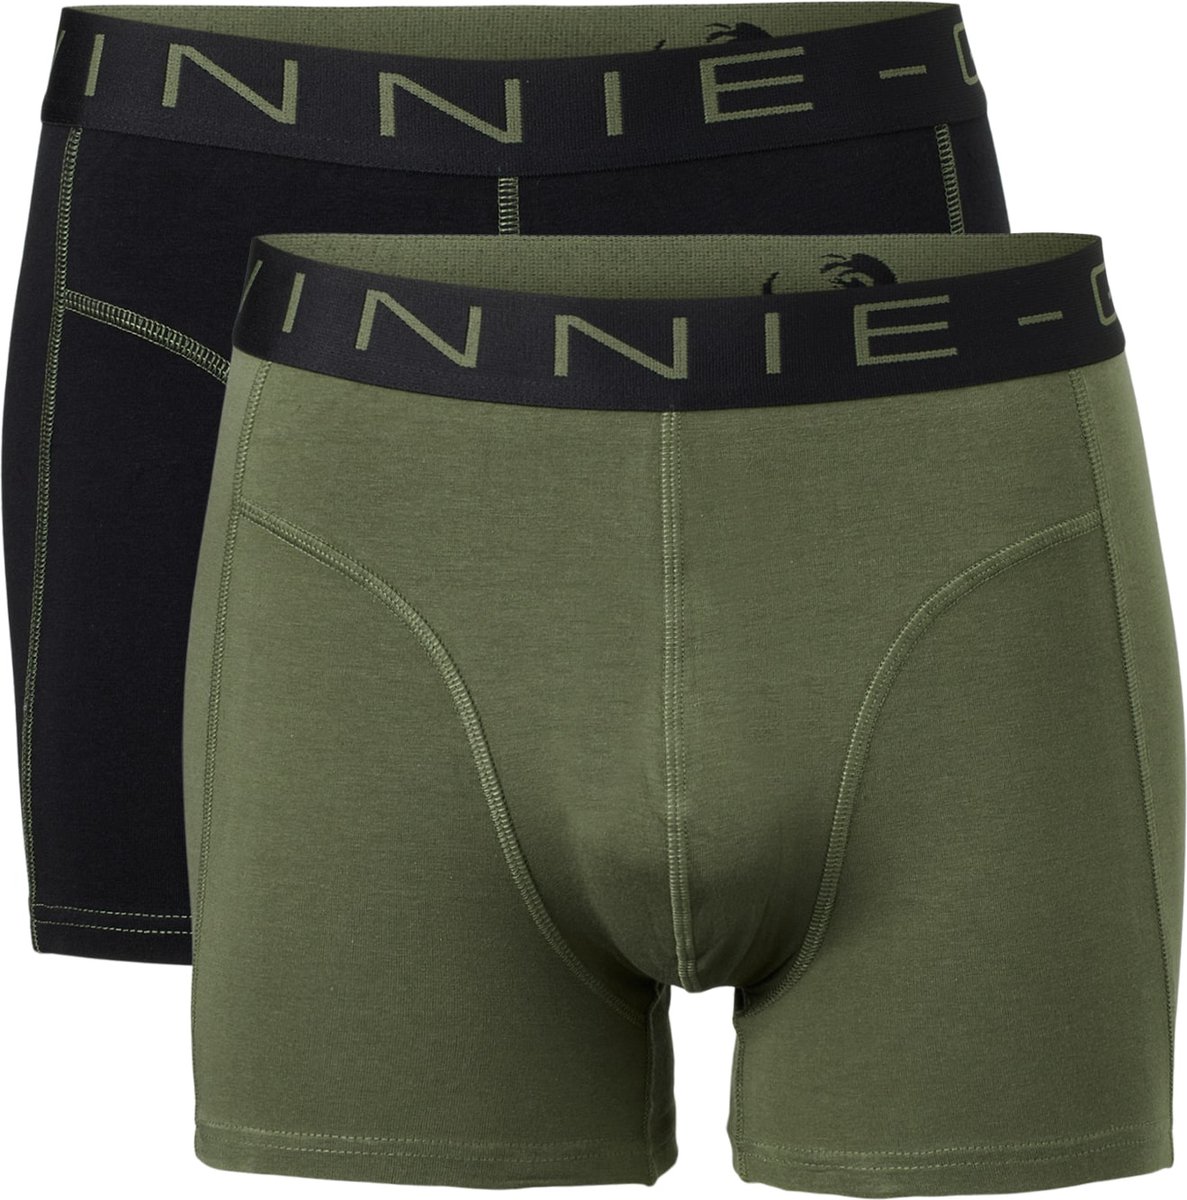 Vinnie-G Boxershorts 2-pack Black/Forest Stitches - Maat XL - Heren Onderbroeken Zwart/Donkergroen - Geen irritante Labels - Katoen heren ondergoed